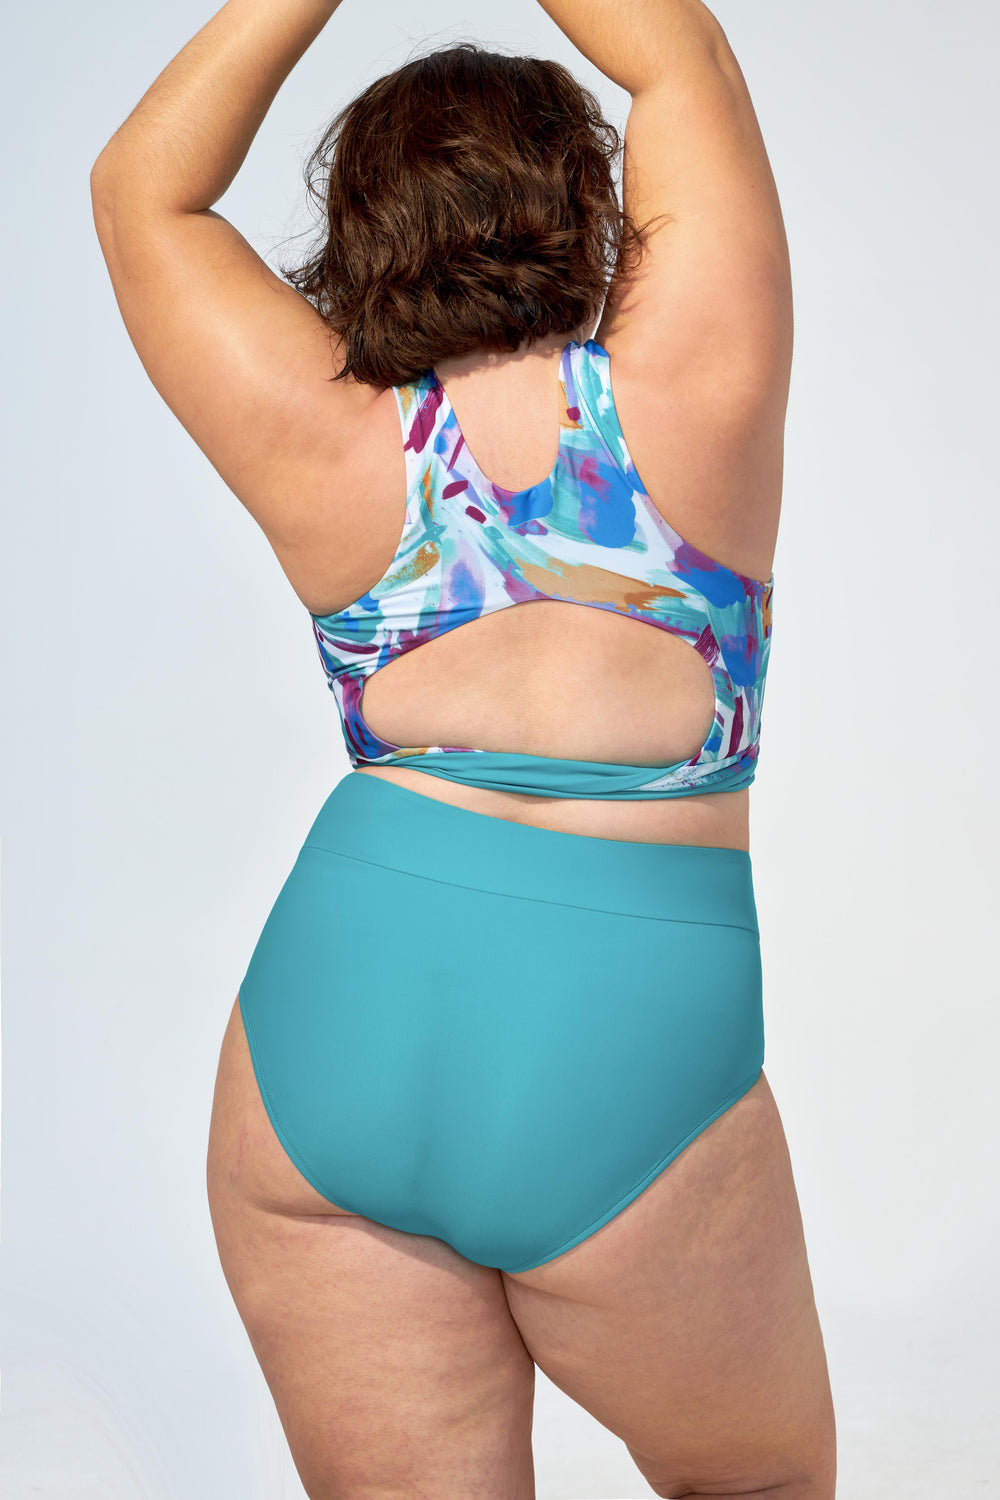 ANALIE – High waist bikini bottom in Turquoise - Selfish swimwear Bottom